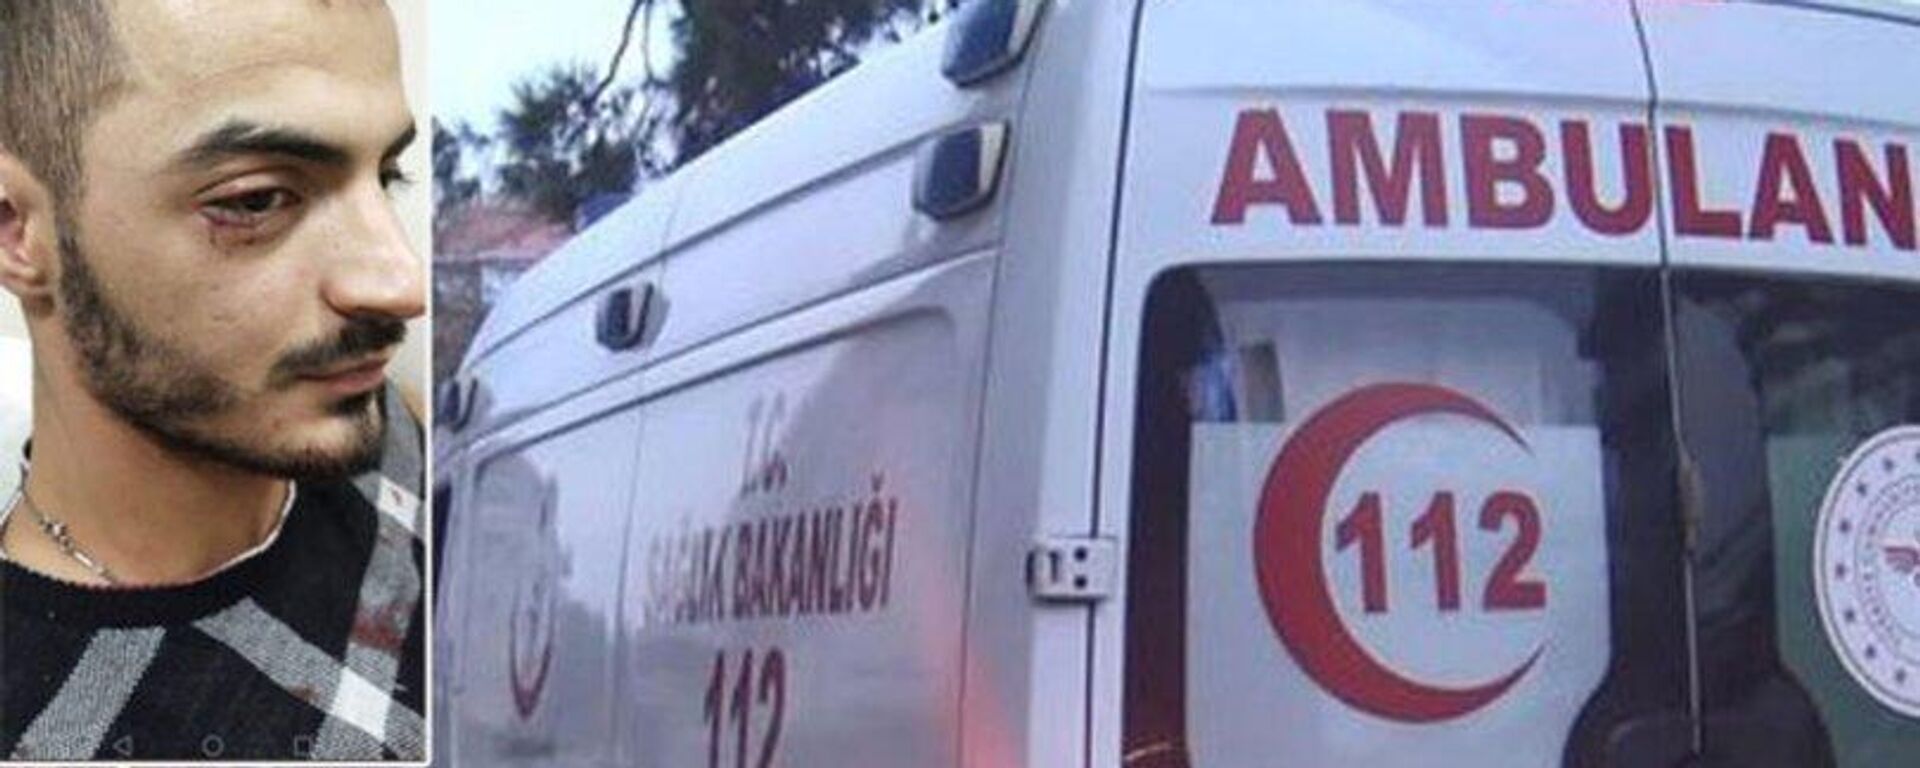 Hasta almaya giden ambulanstaki sağlık çalışanlarına saldırıp, darp ettiler - Sputnik Türkiye, 1920, 07.11.2022